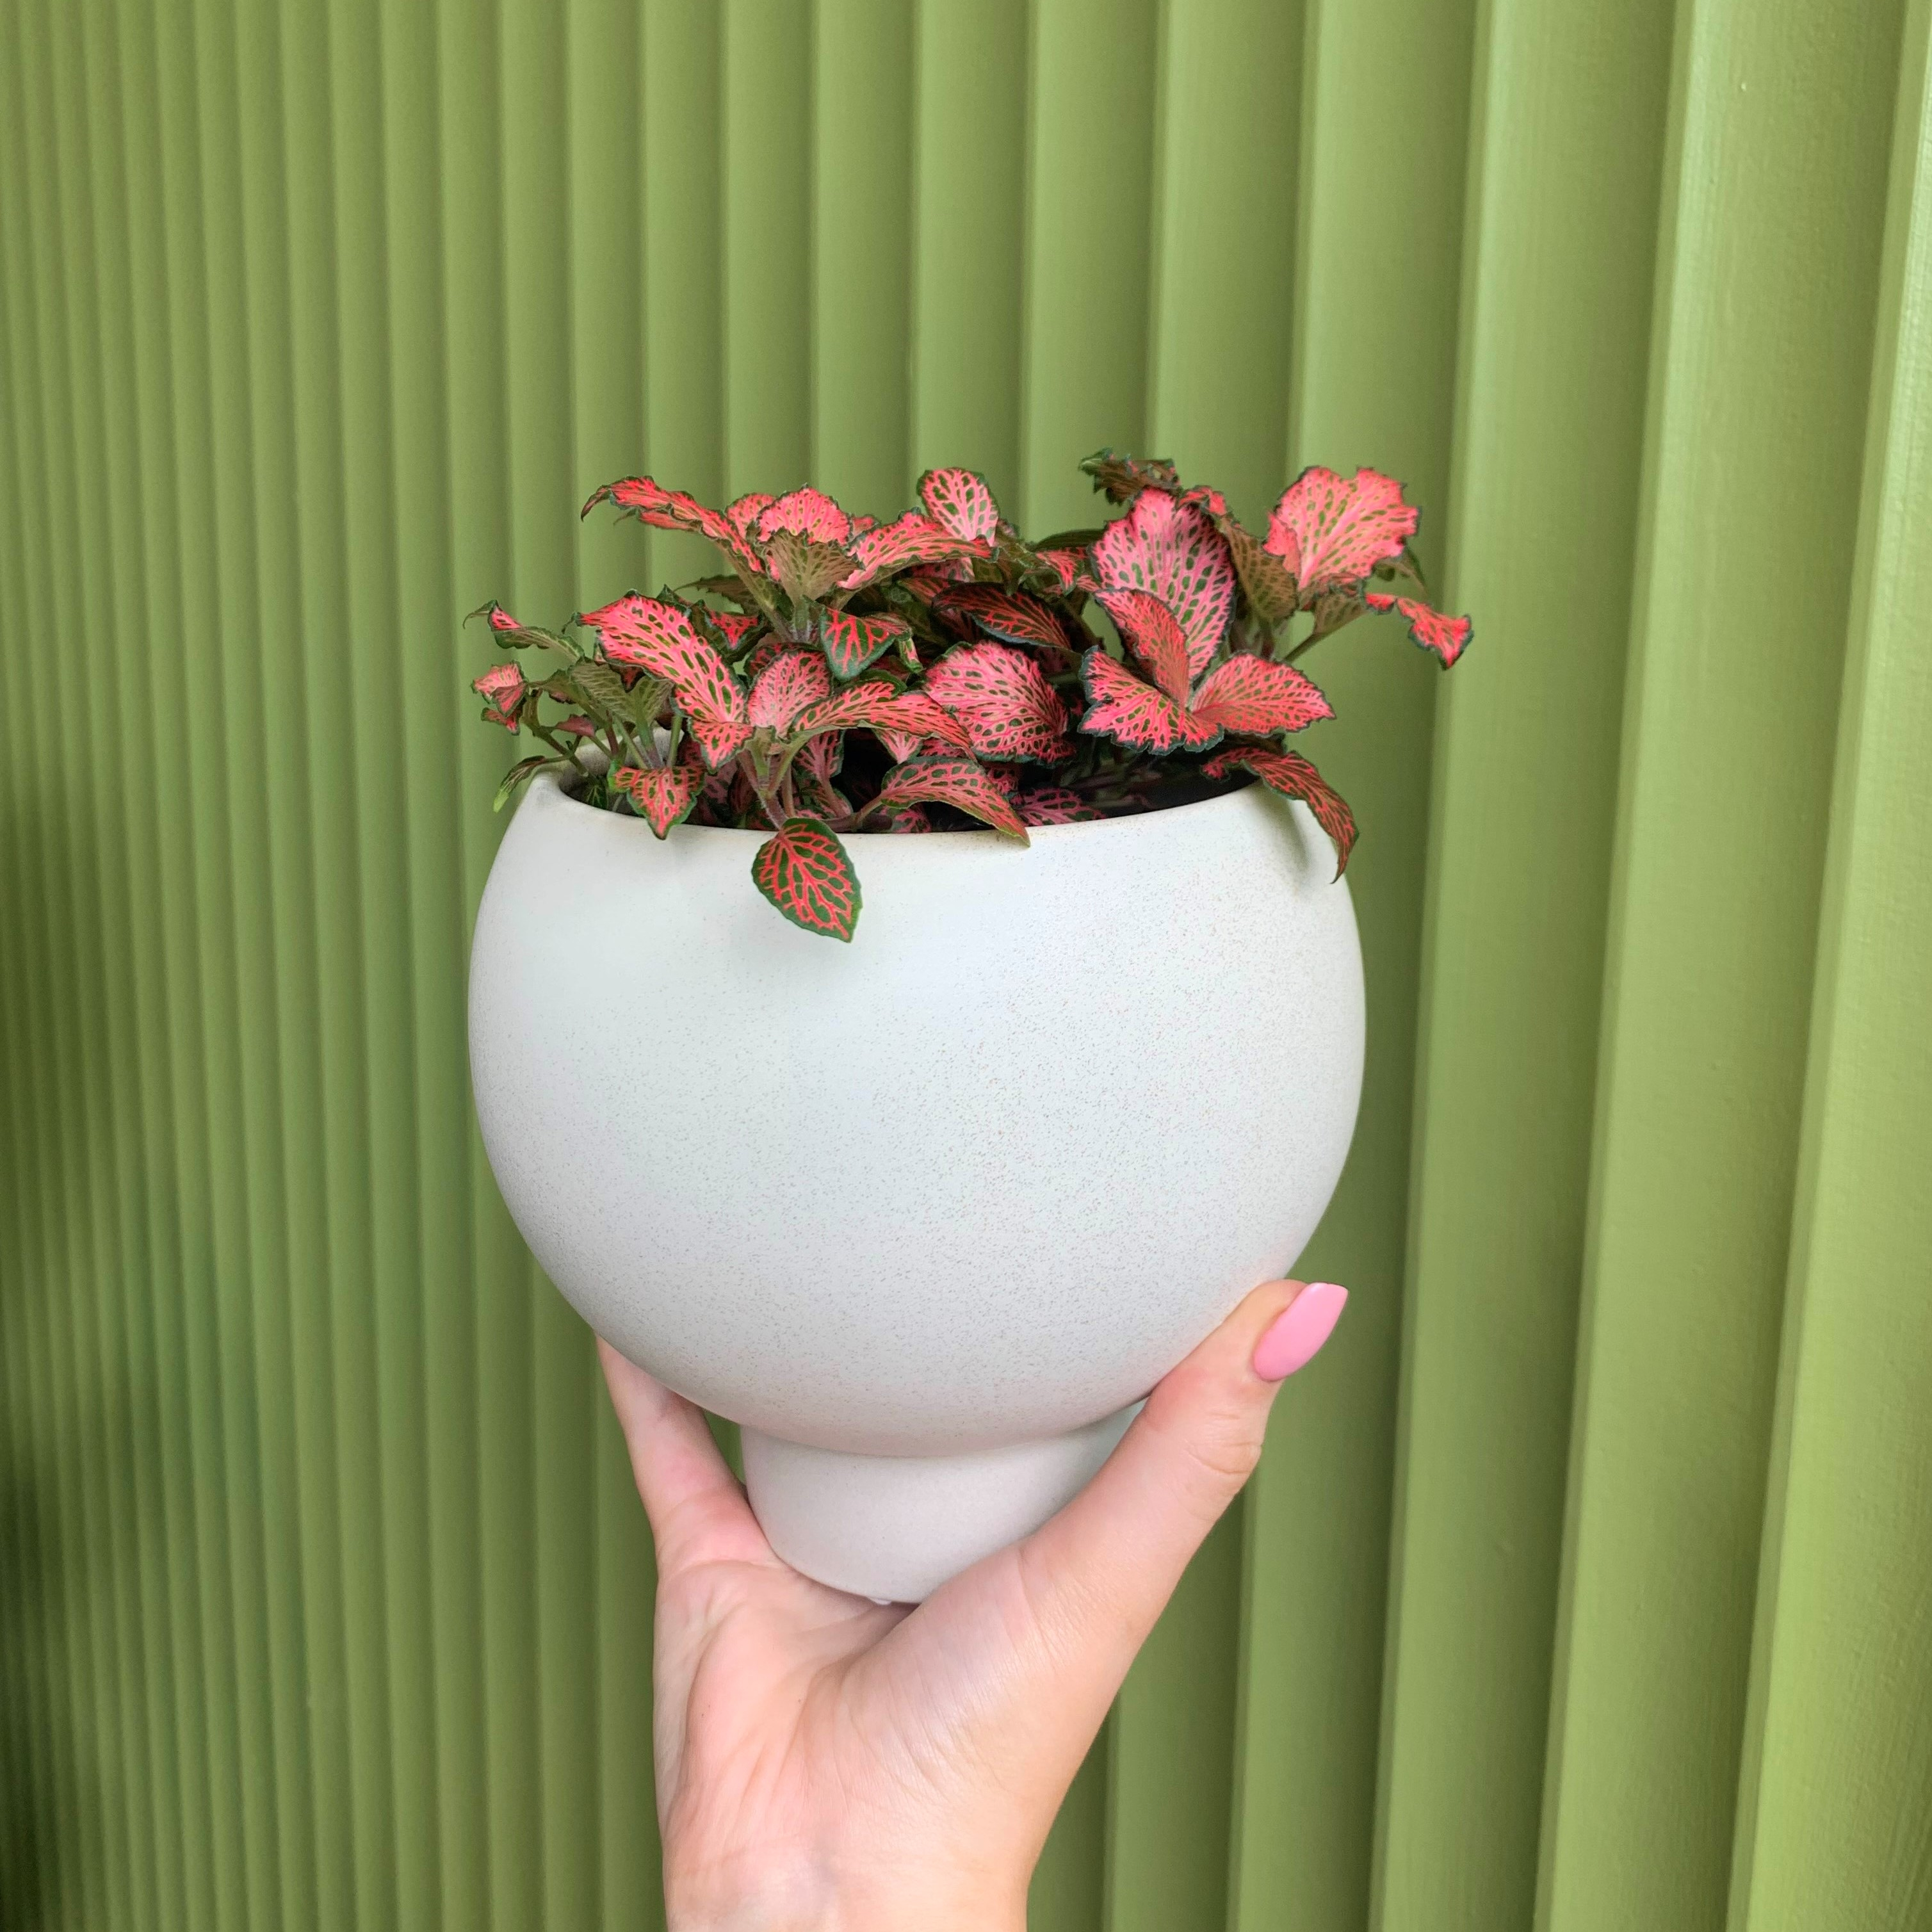 BRUNBÄR Plant pot with saucer, outdoor terracotta, 6 - IKEA